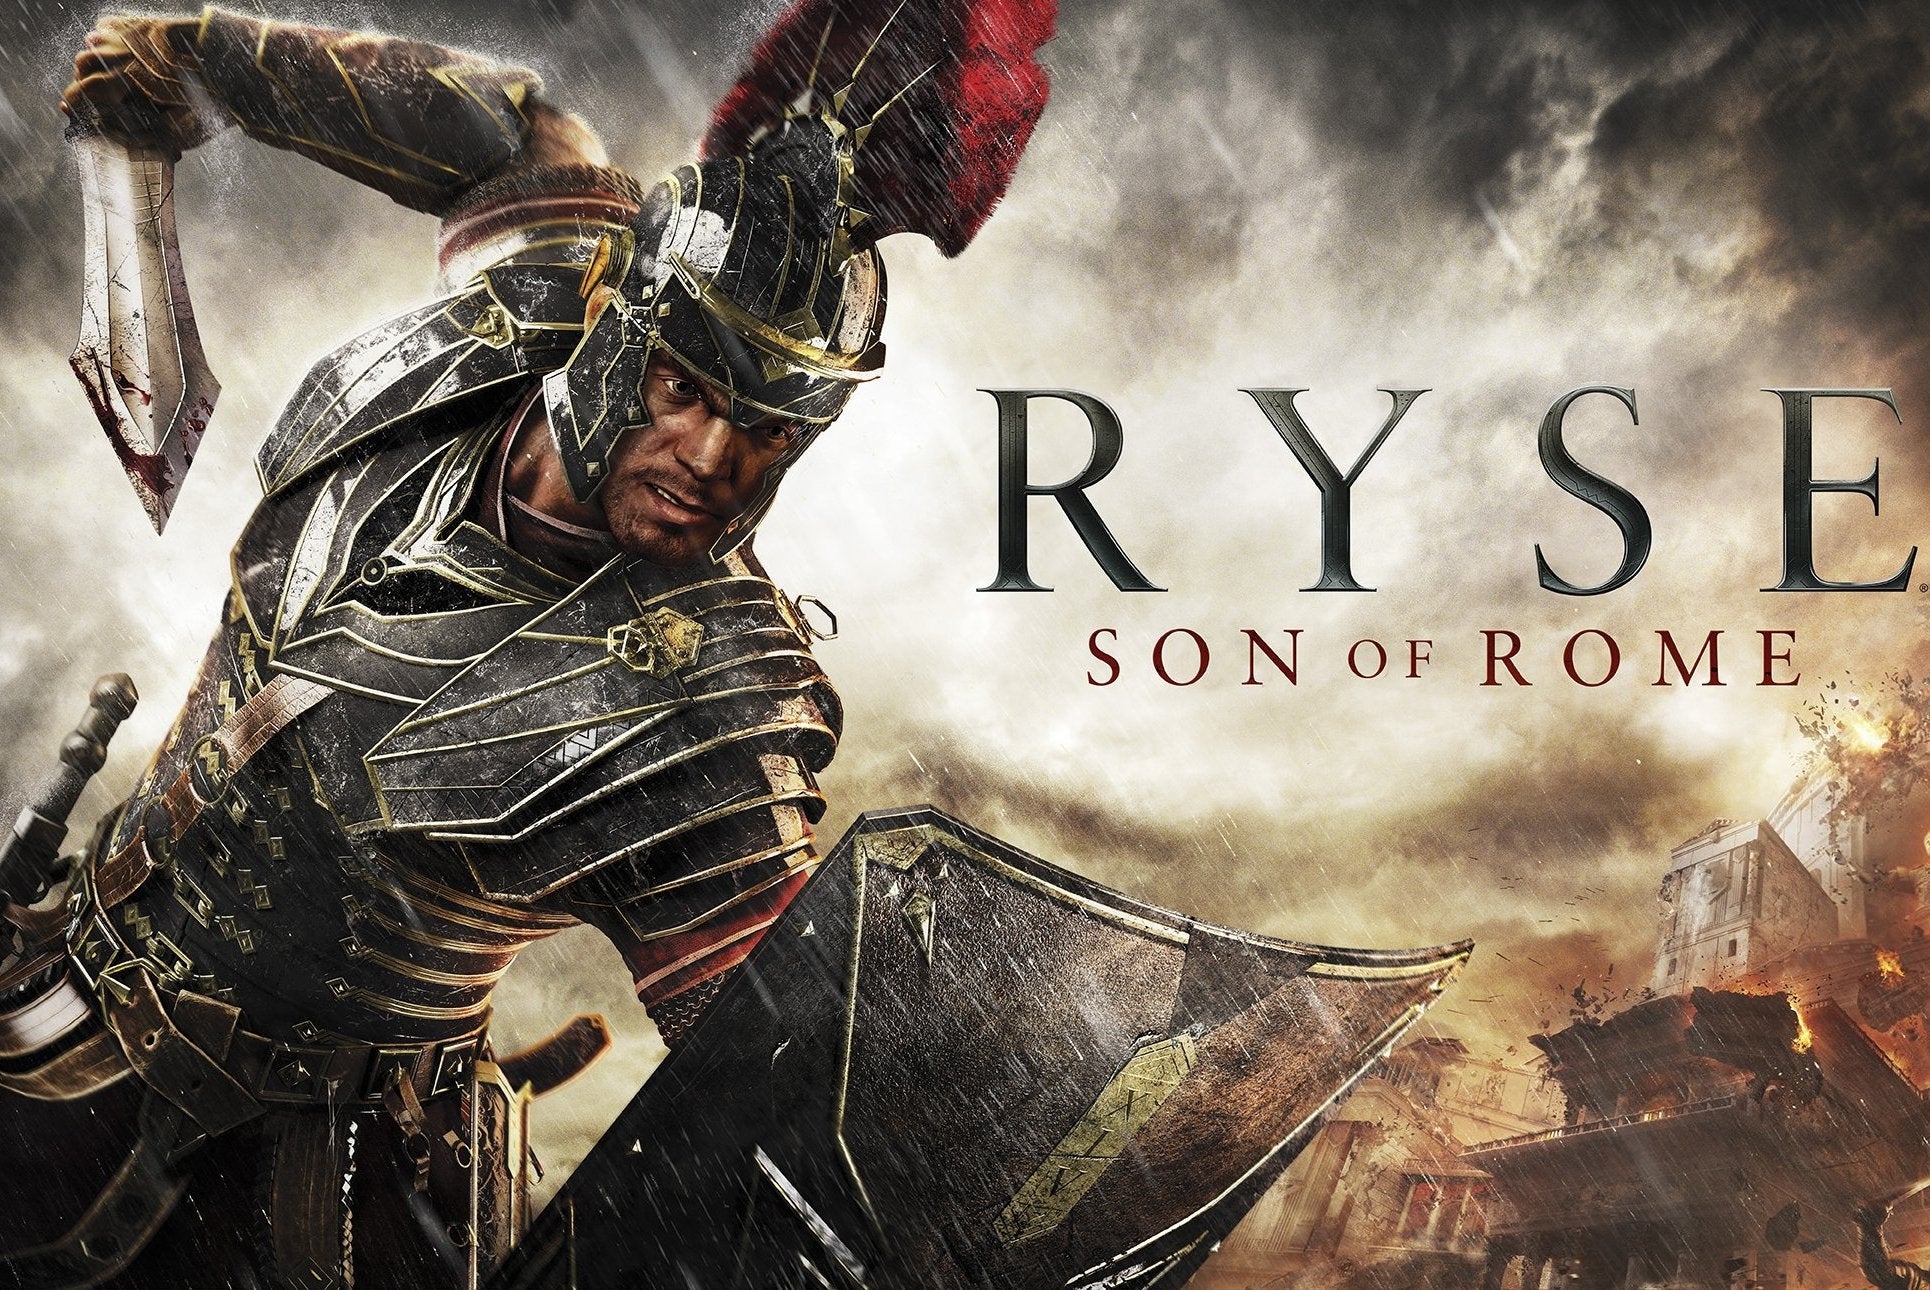 Immagine di Ryse: Son of Rome, pubblicato un video che riassume la storia